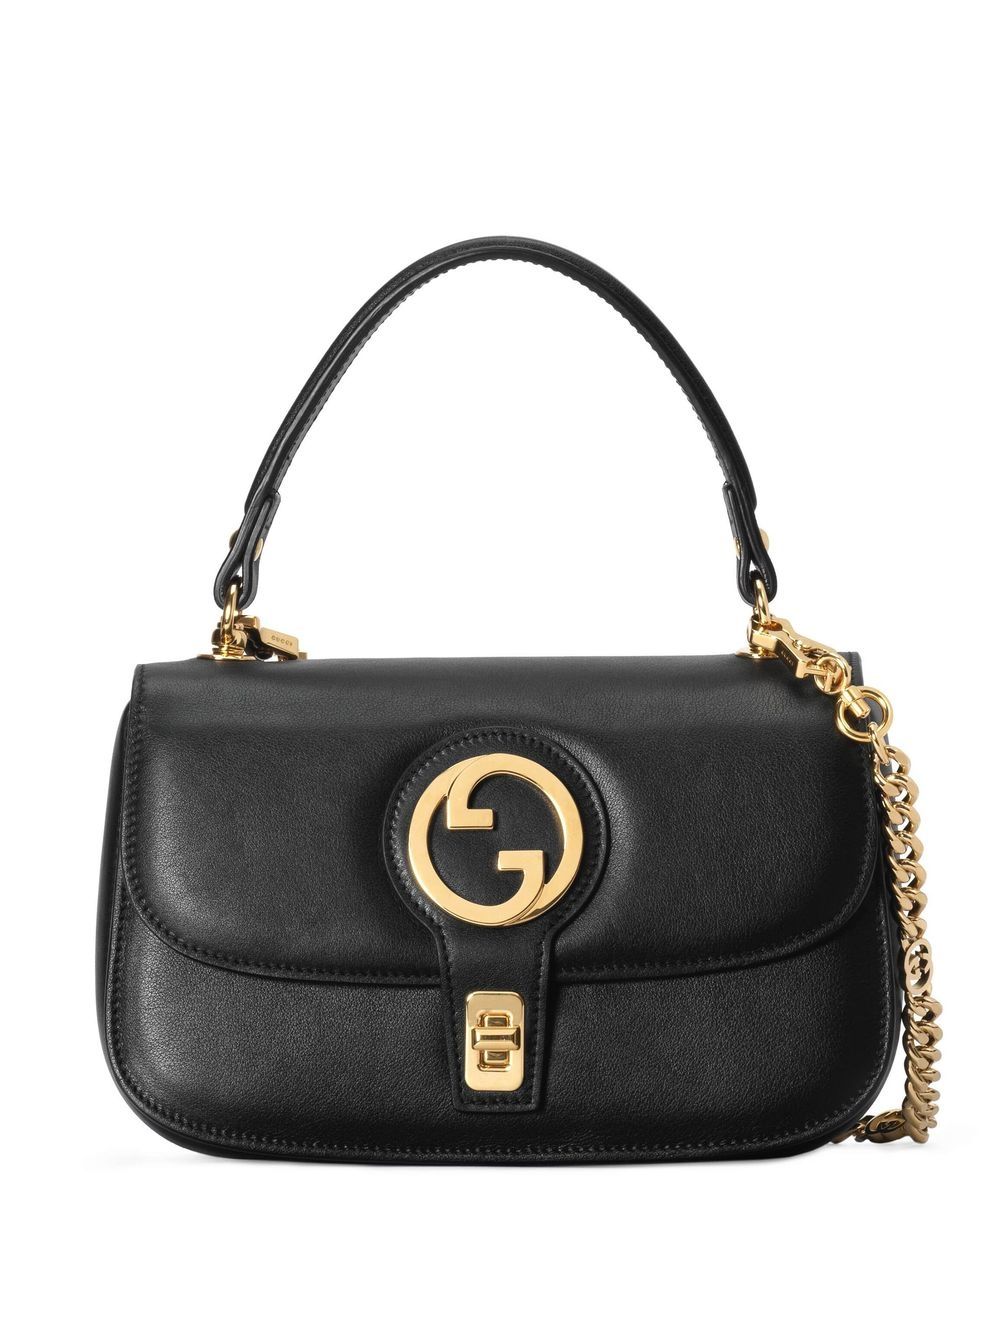 Gucci Blondie Top Handle Bag In Black